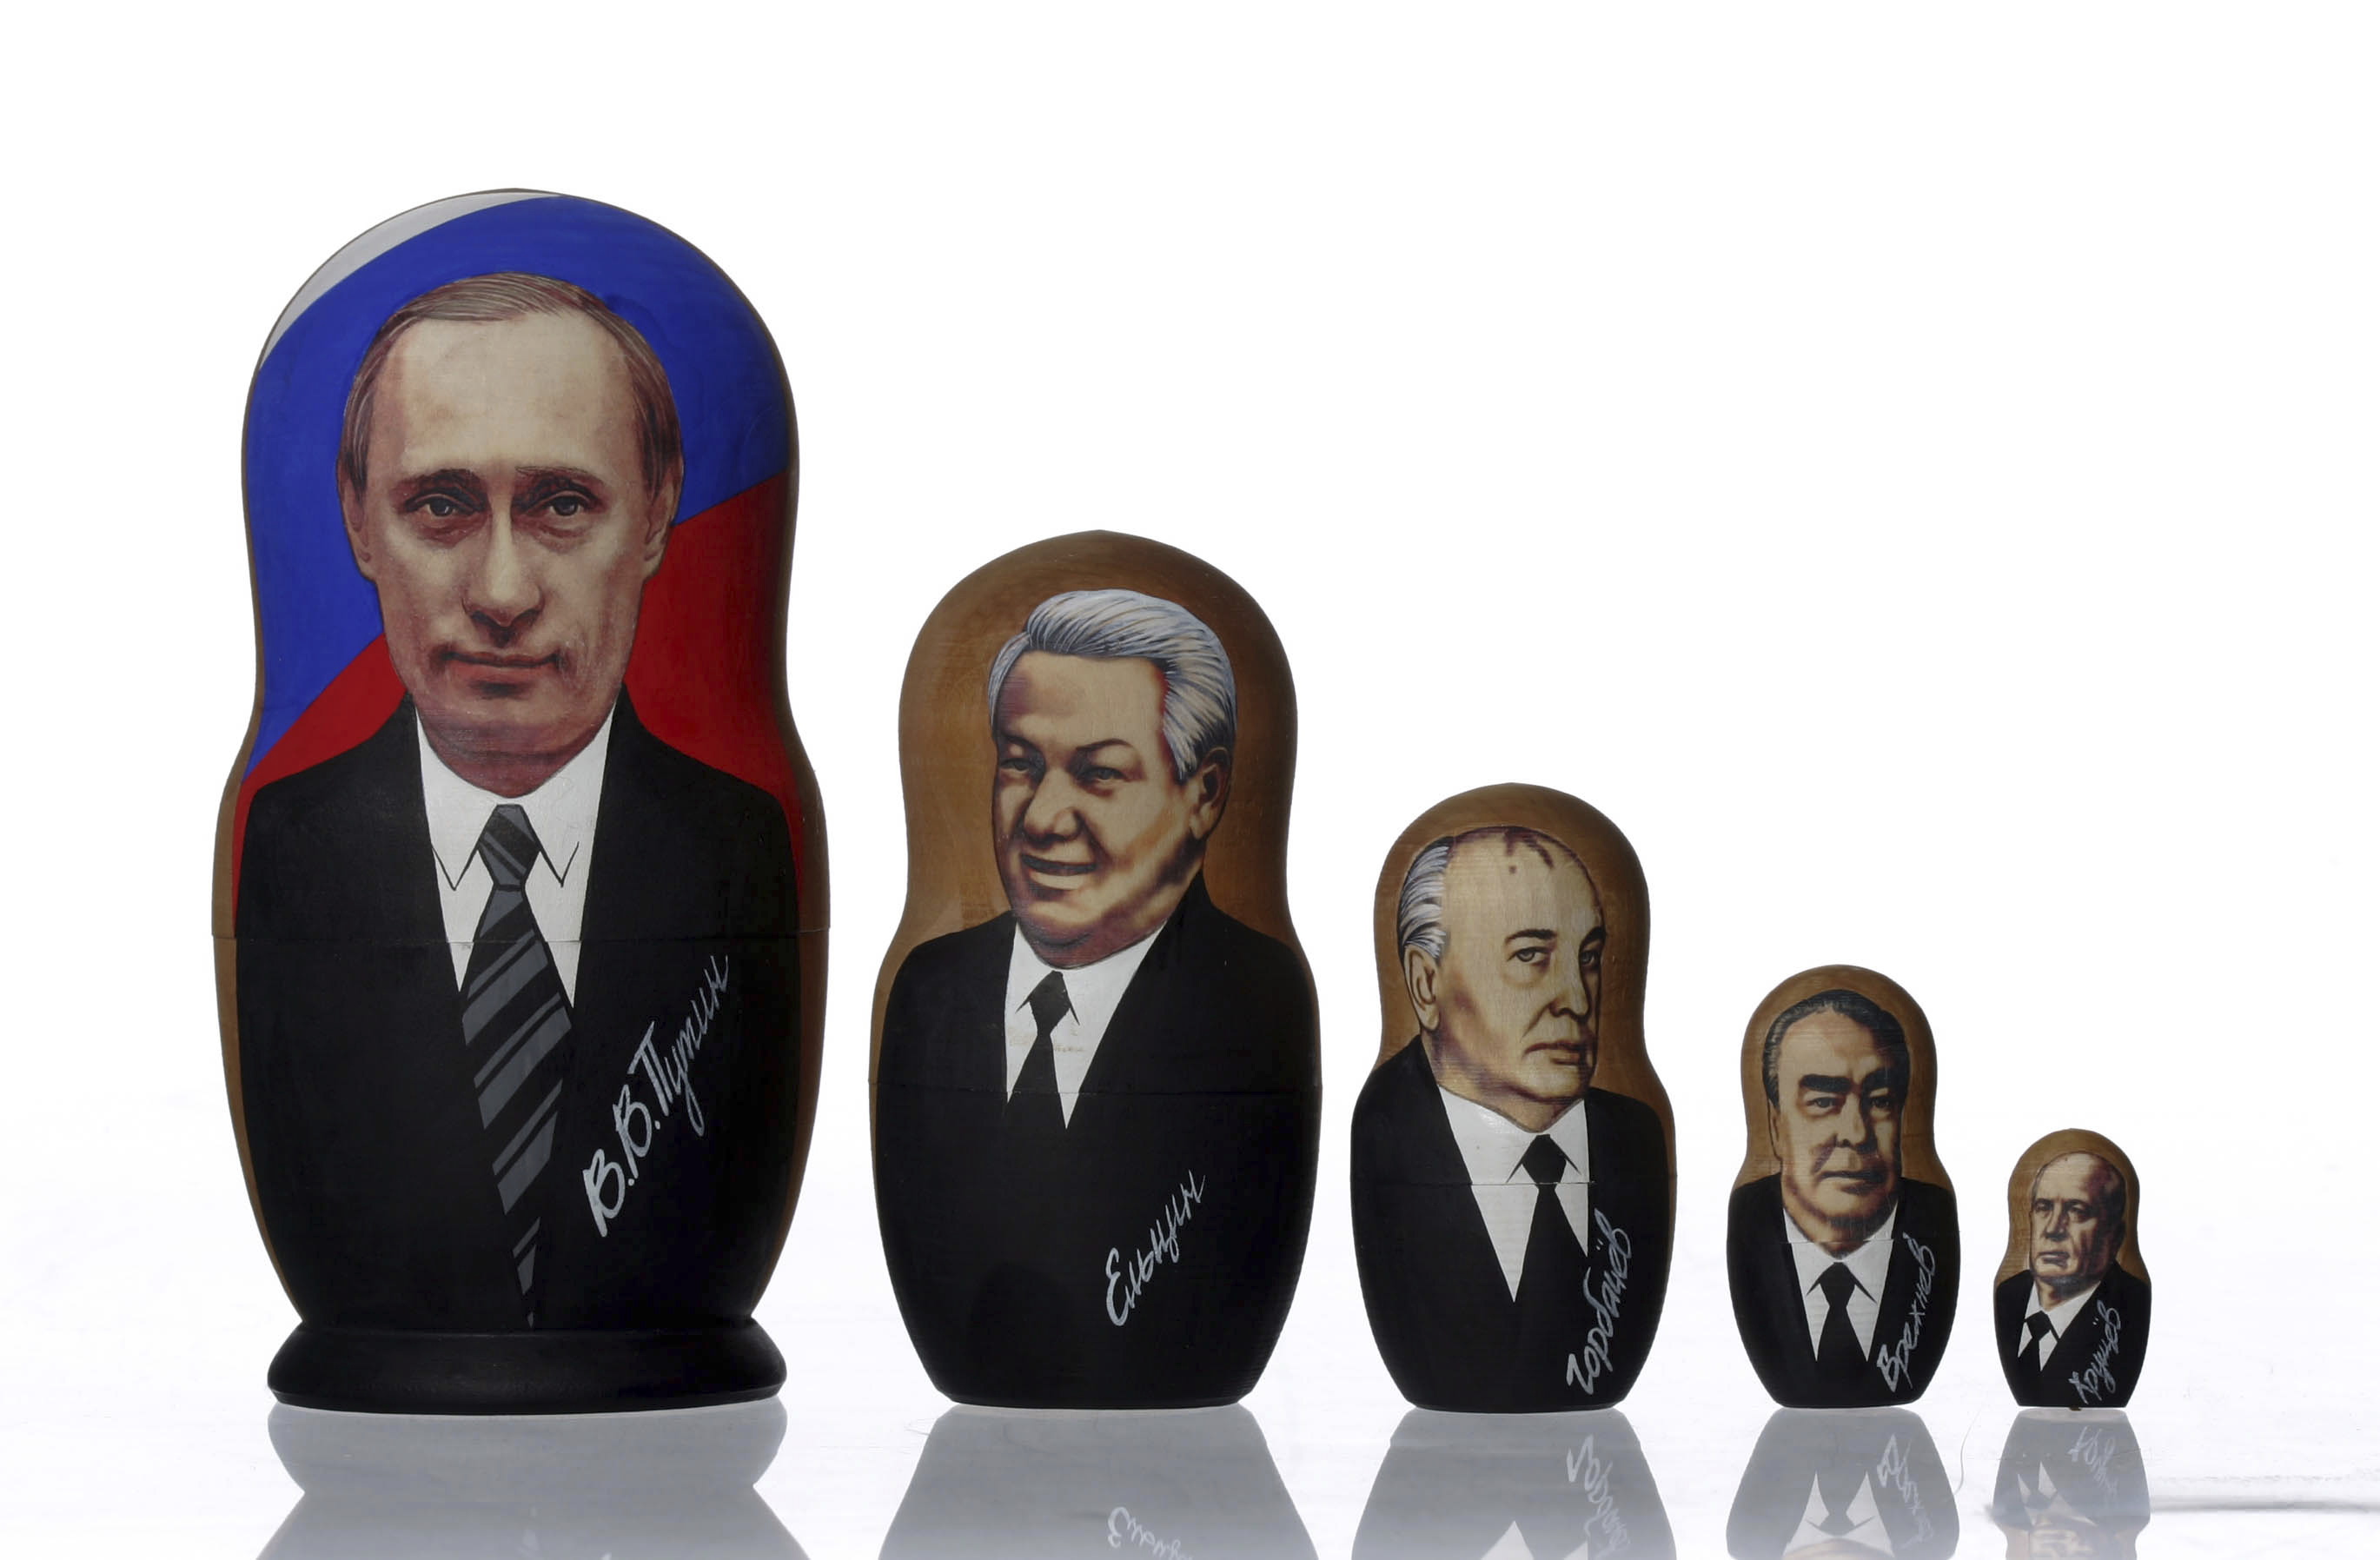 Vladimir Poutine : à l’origine de sa popularité, le redressement économique de la Russie